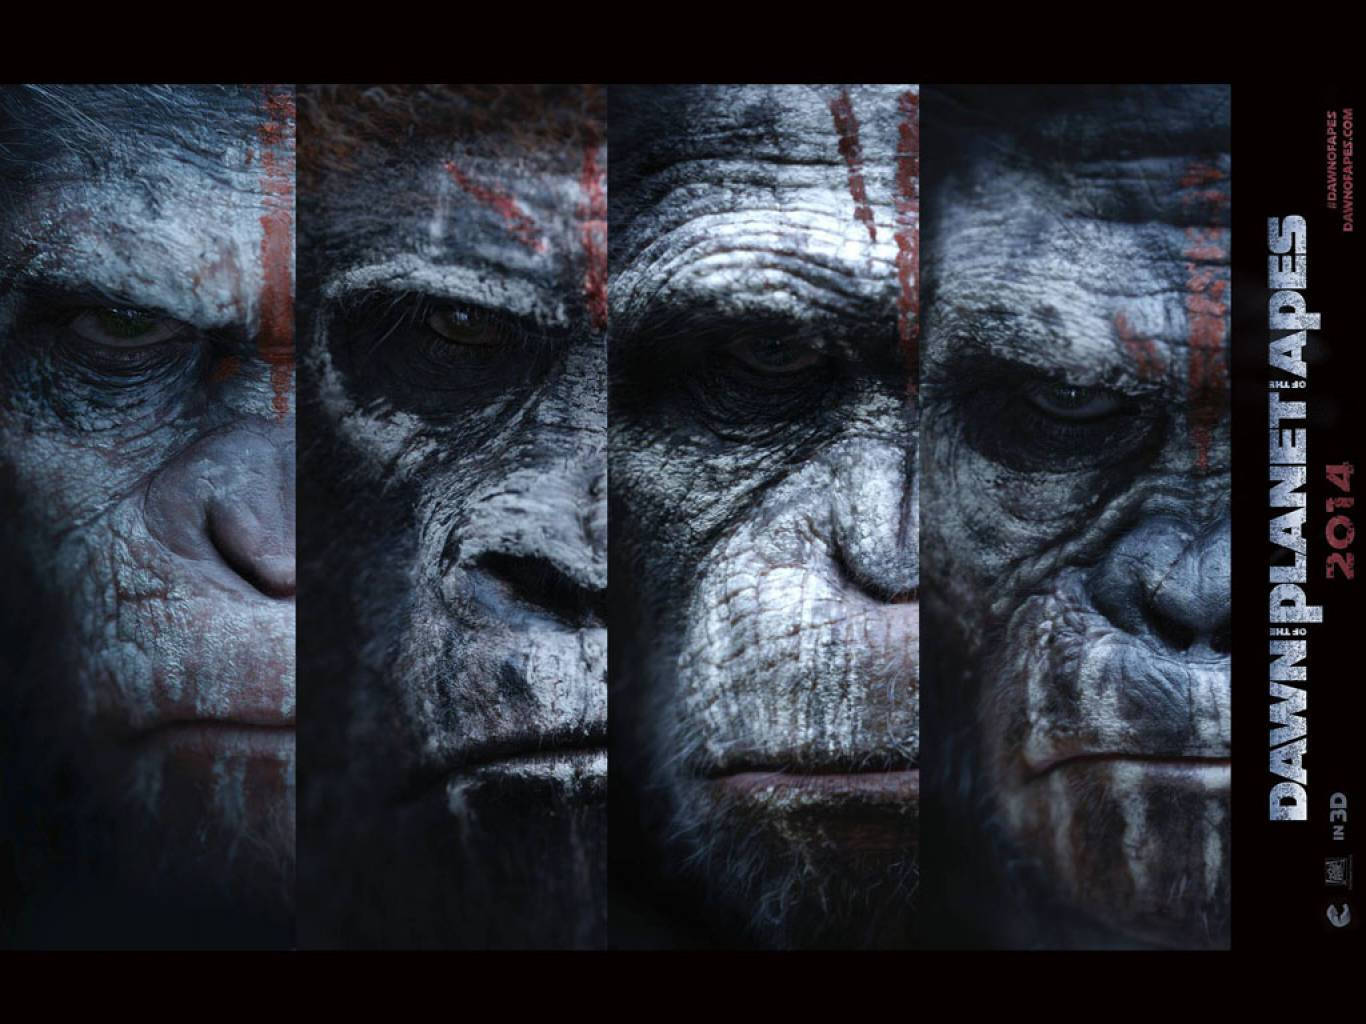 Affischför Planet Of The Apes Trilogin. Wallpaper